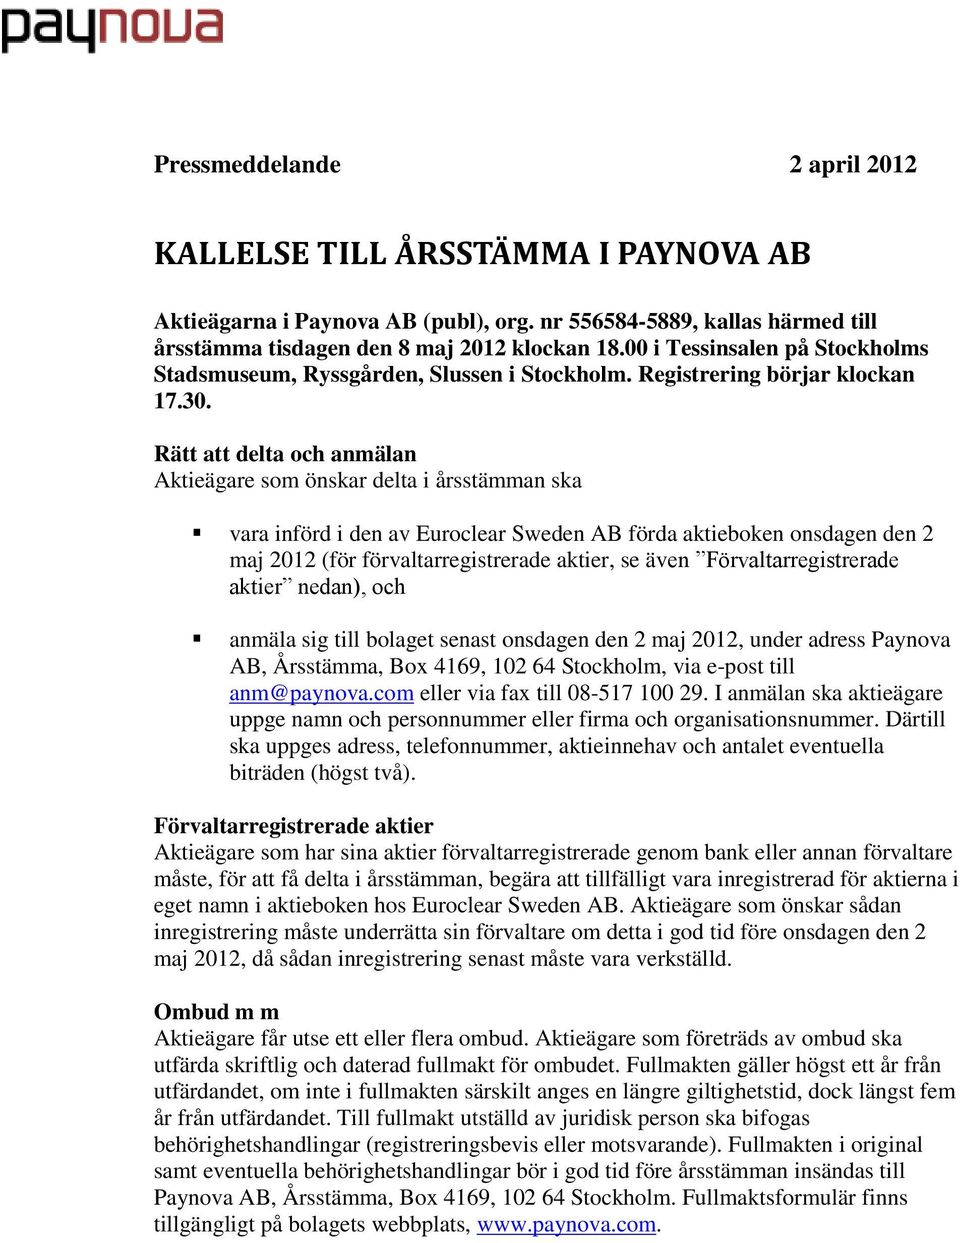 Rätt att delta och anmälan Aktieägare som önskar delta i årsstämman ska vara införd i den av Euroclear Sweden AB förda aktieboken onsdagen den 2 maj 2012 (för förvaltarregistrerade aktier, se även